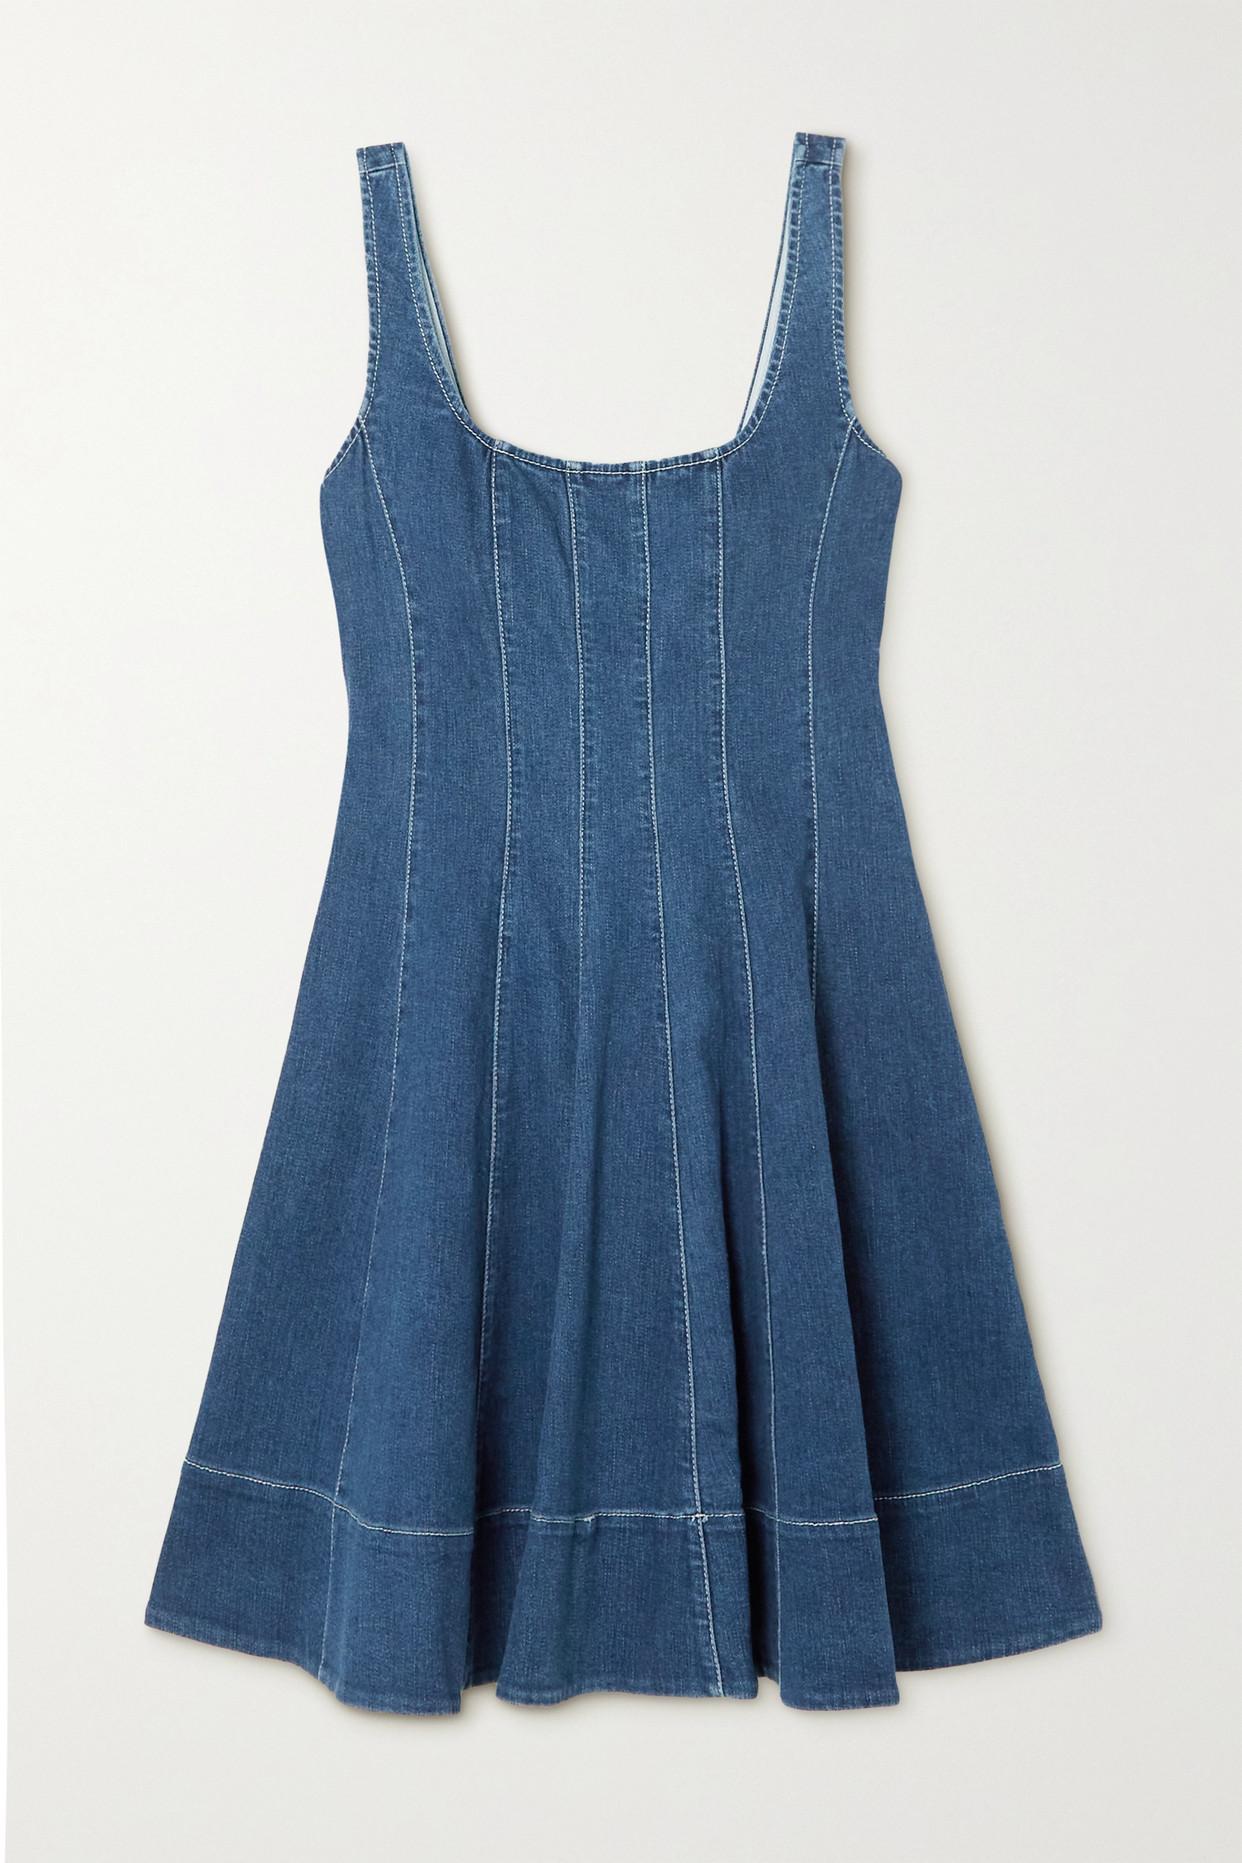 STAUD Wells Paneled Denim Mini Dress in Blue | Lyst